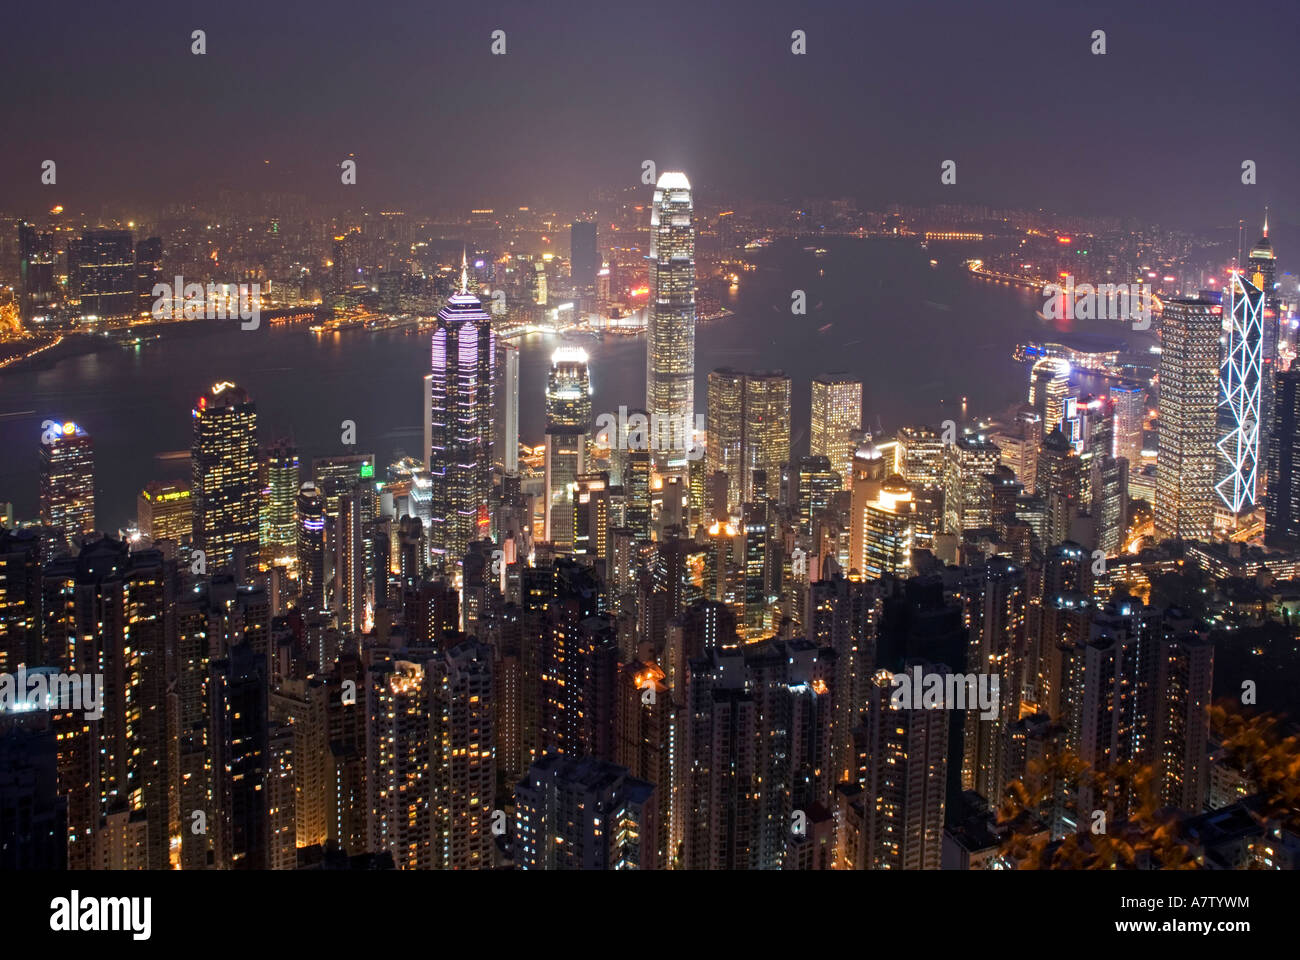 City lit up at waterfront, Hong Kong, China Stock Photo